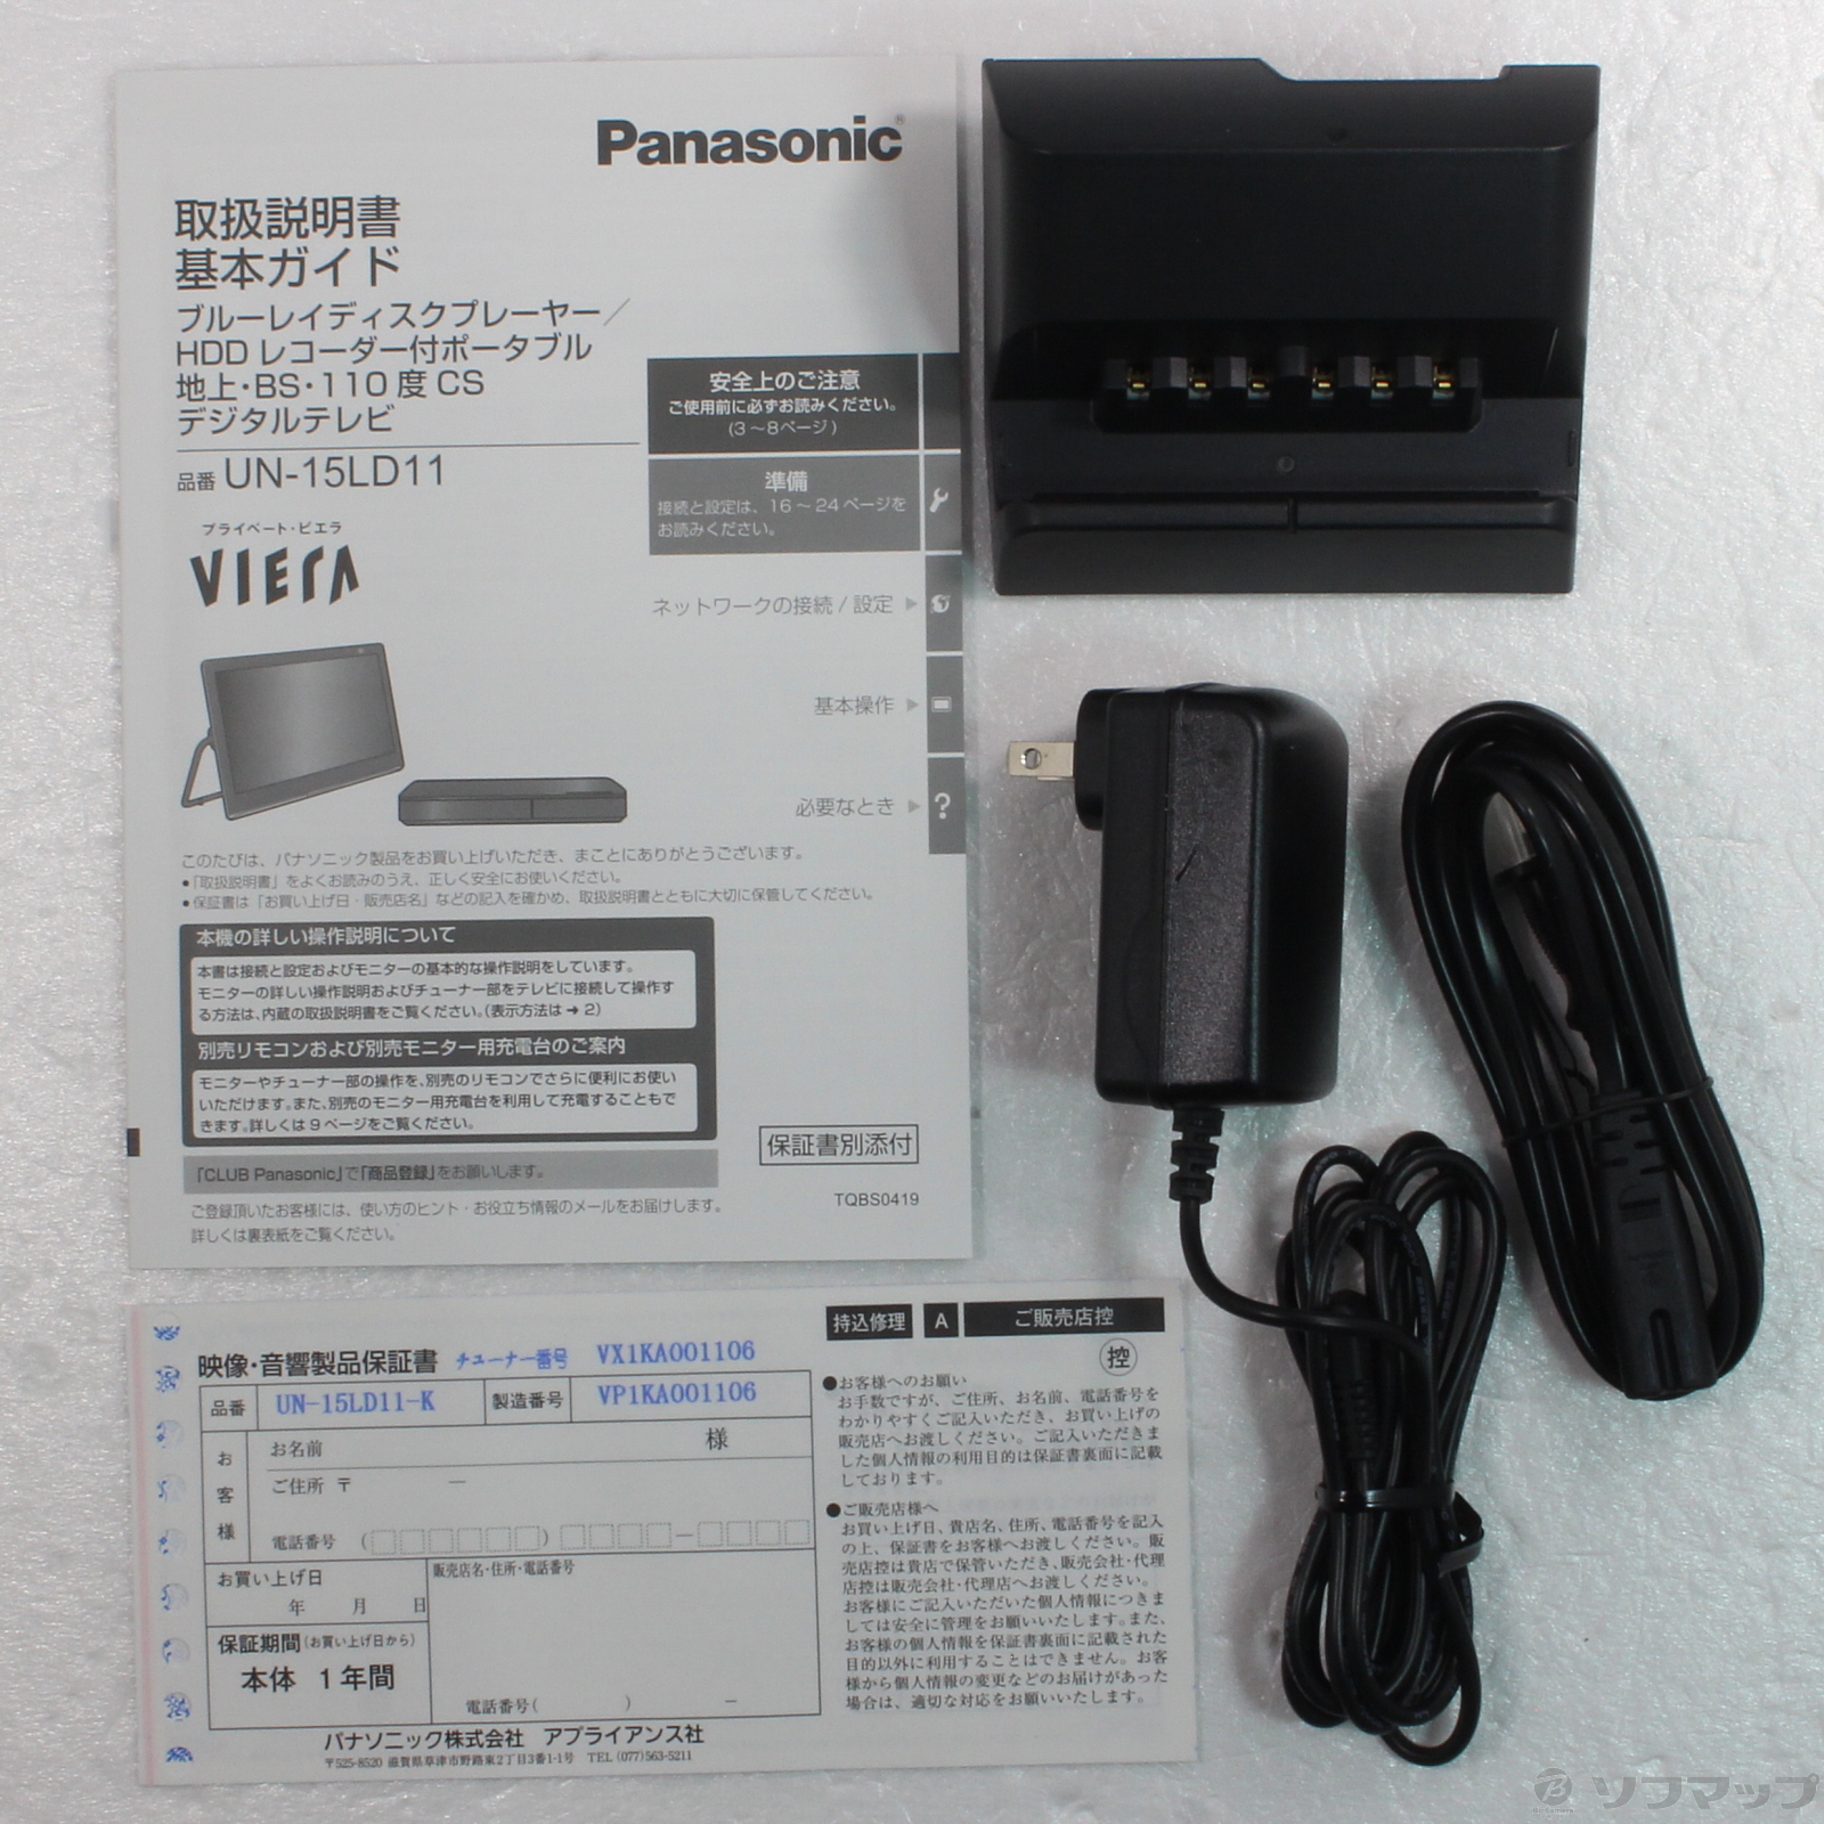 【即発送可】展示品保証付 Panasonic プライベート・ビエラ UN-10CE8-W 保証付 ポータブルテレビ